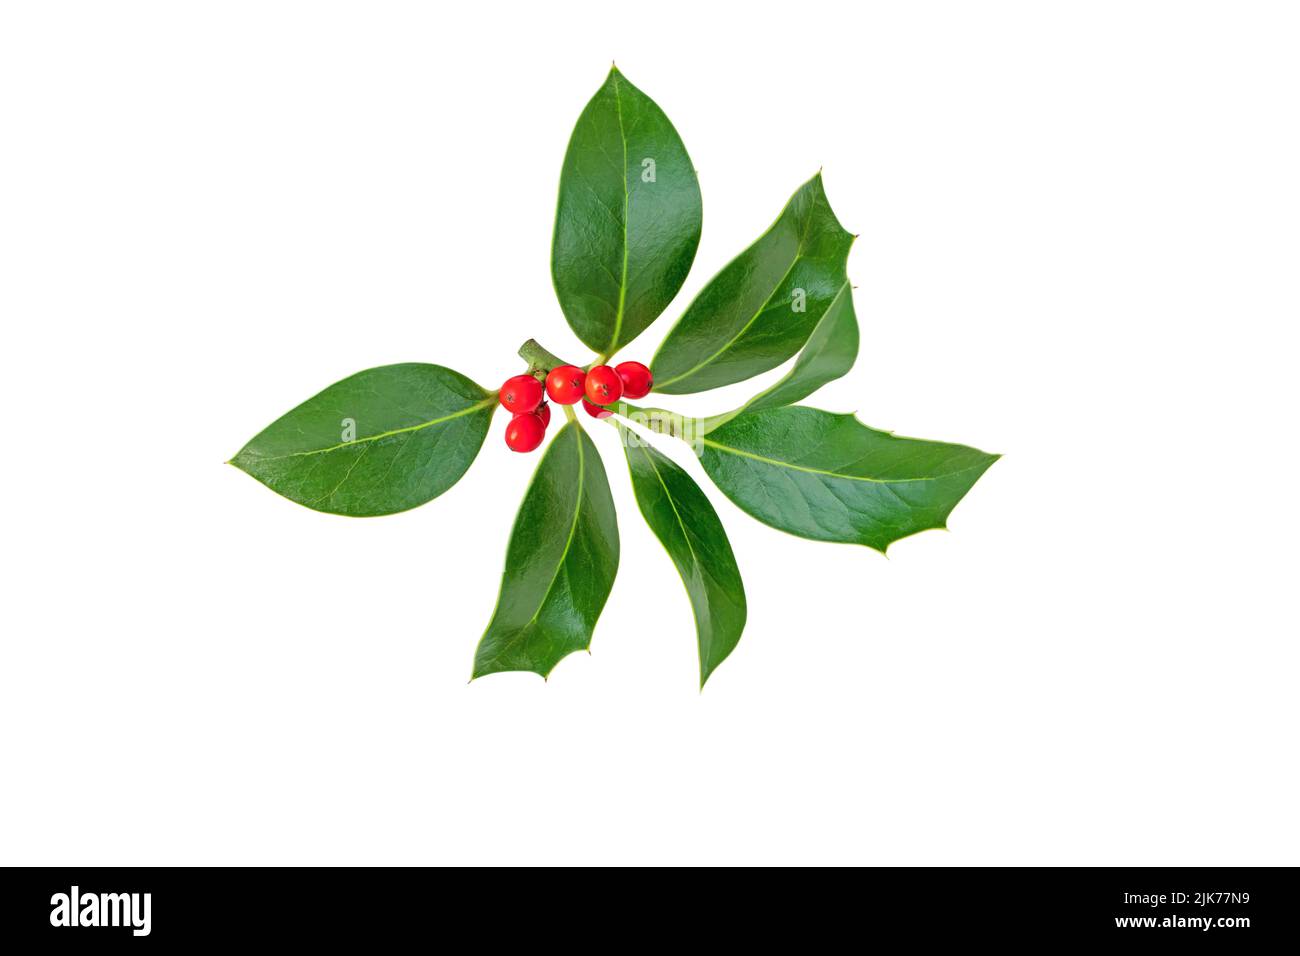 Rama de acebo de Navidad. Planta de decoración navideña con hojas verdes brillantes y bayas rojas aisladas sobre blanco Foto de stock